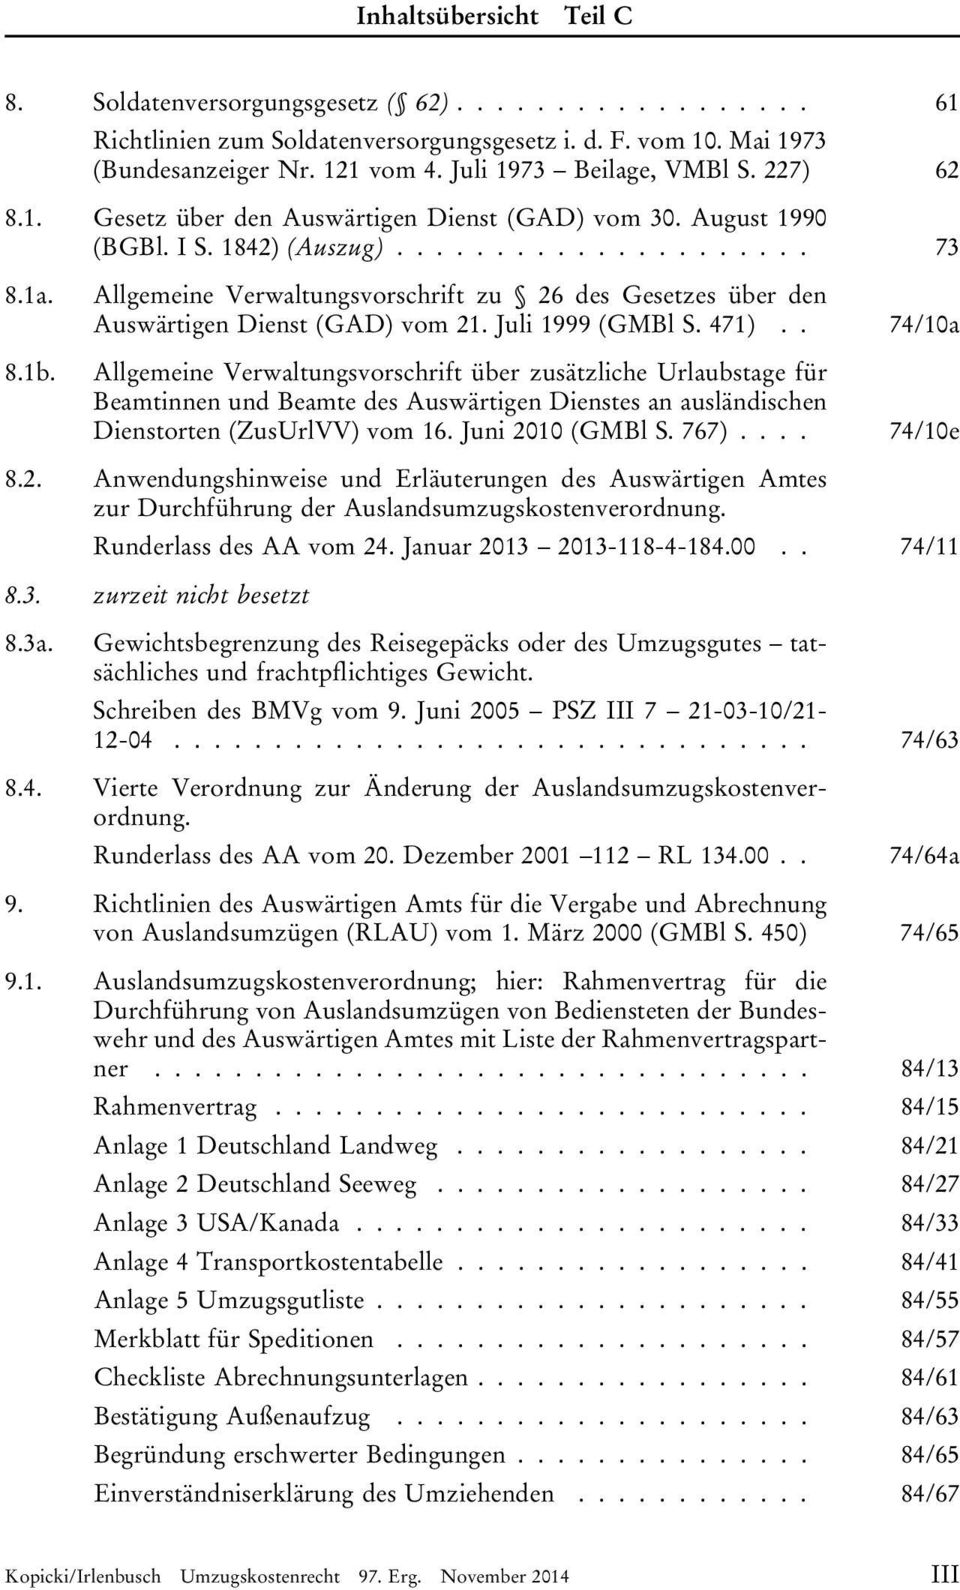 . 74/10a Allgemeine Verwaltungsvorschrift über zusätzliche Urlaubstage für Beamtinnen und Beamte des Auswärtigen Dienstes an ausländischen Dienstorten (ZusUrlVV) vom 16. Juni 2010 (GMBl S. 767).